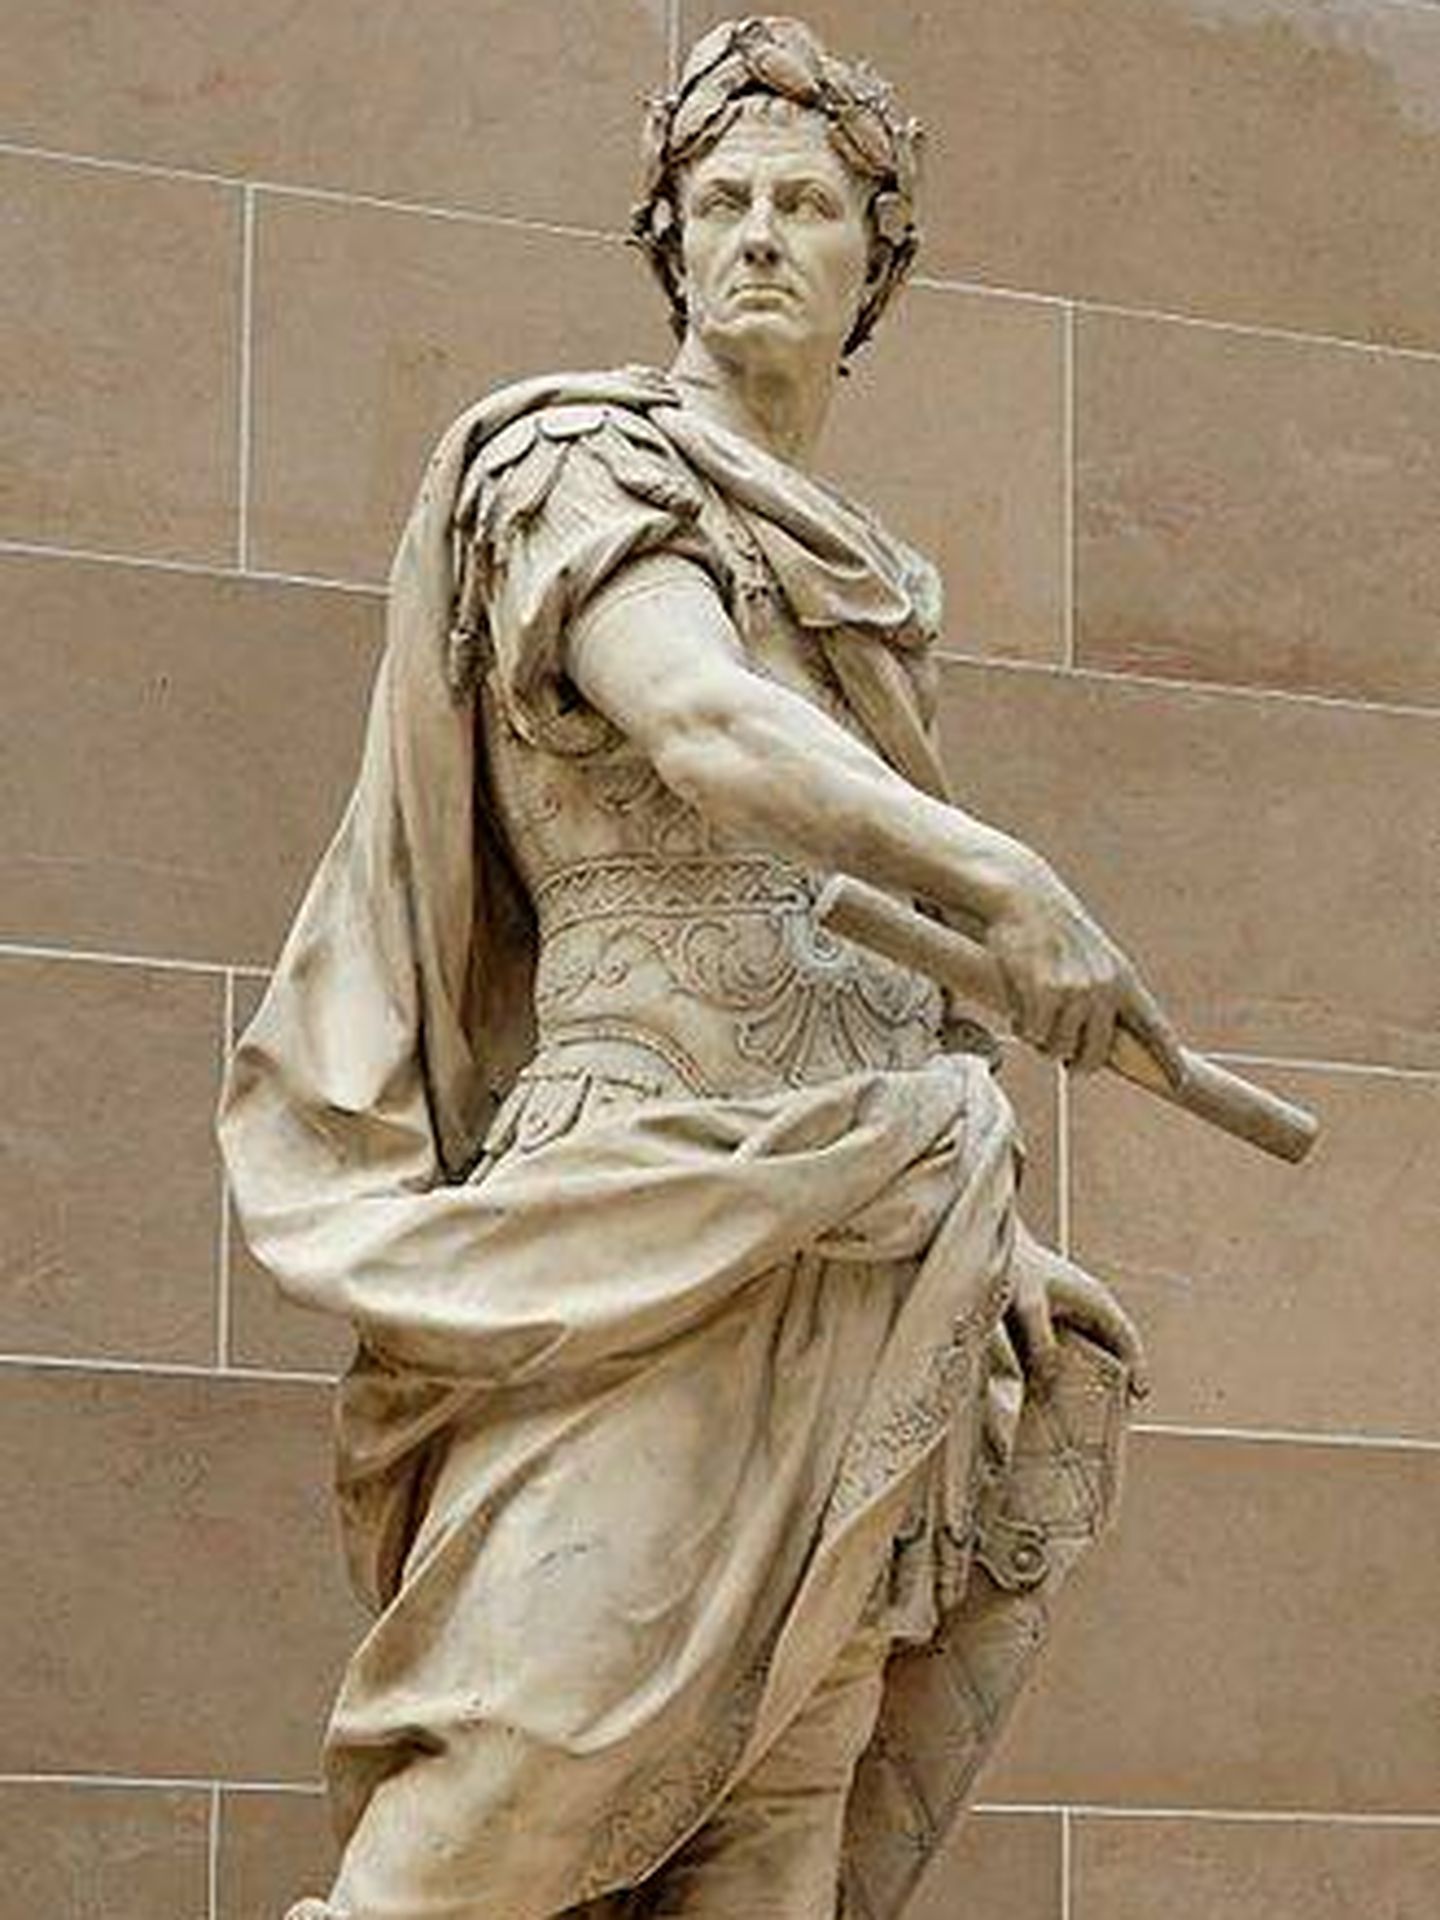 Escultura de Julio César. (Archivo fotográfico del Museo del Louvre)